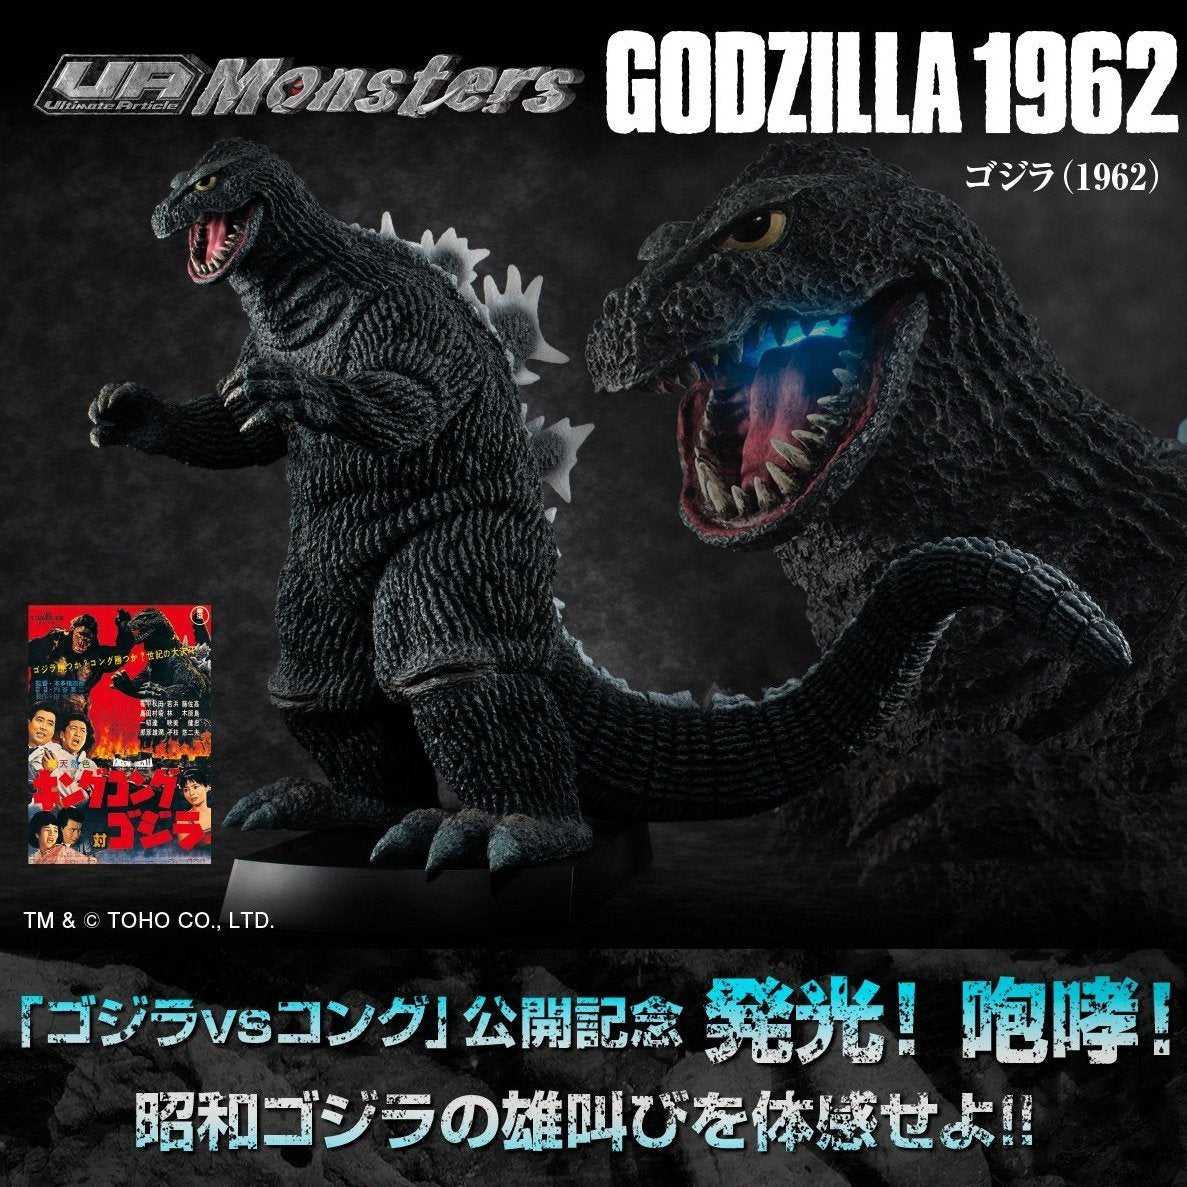 Godzilla "UA Monsters Godzilla" (1962)-MegaHouse-Ace Cards & Collectibles